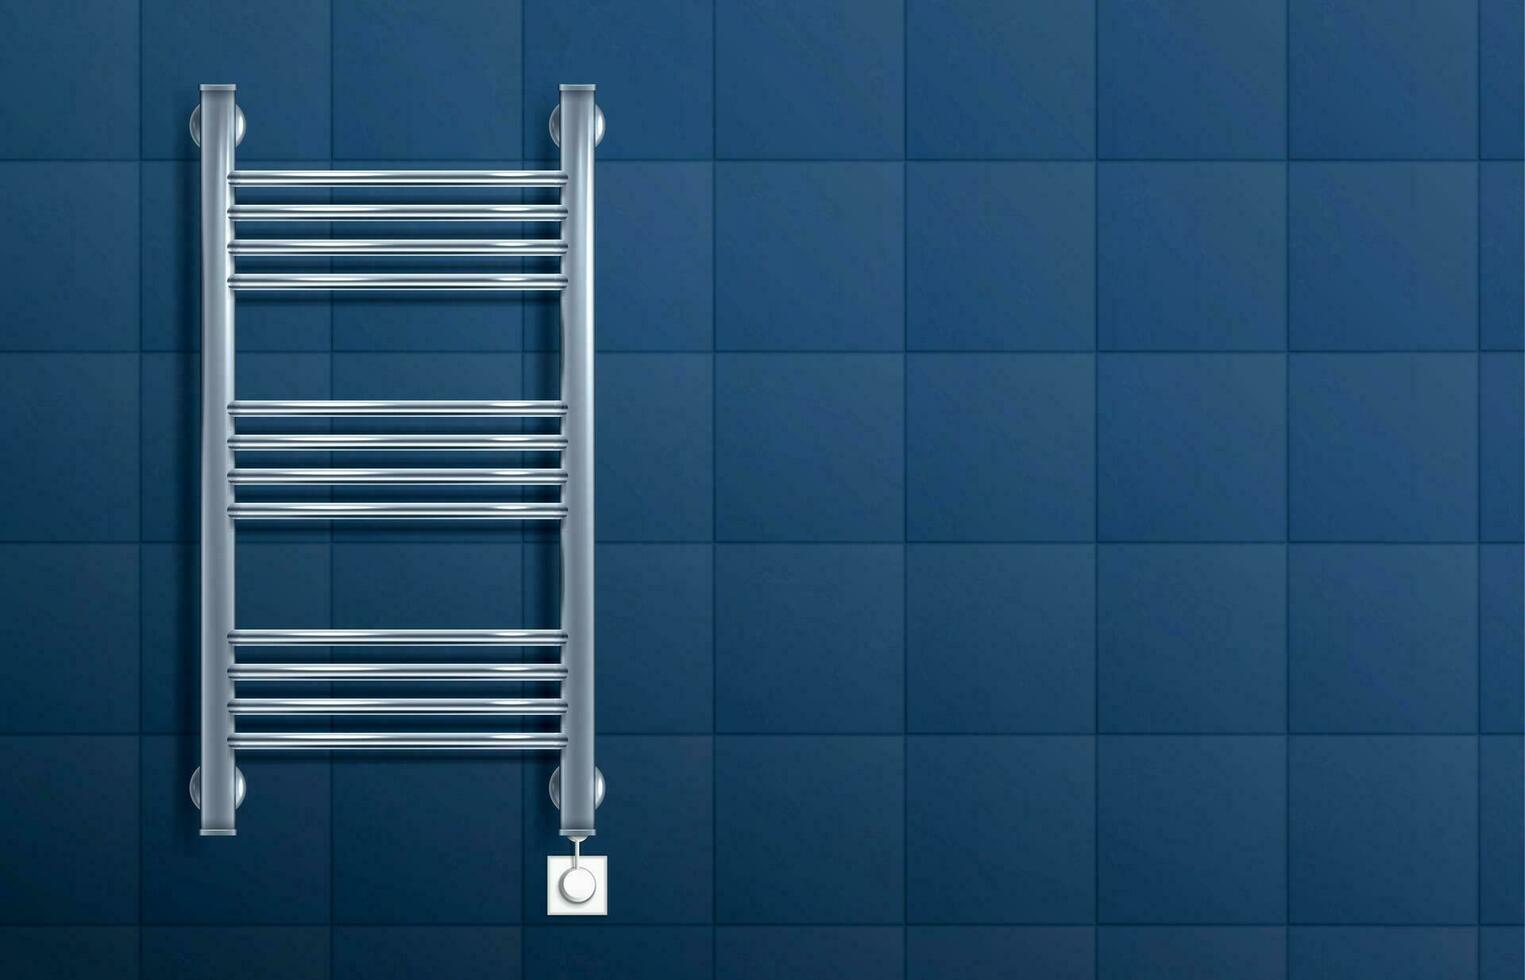 Heated Towel Rail Illustration vector